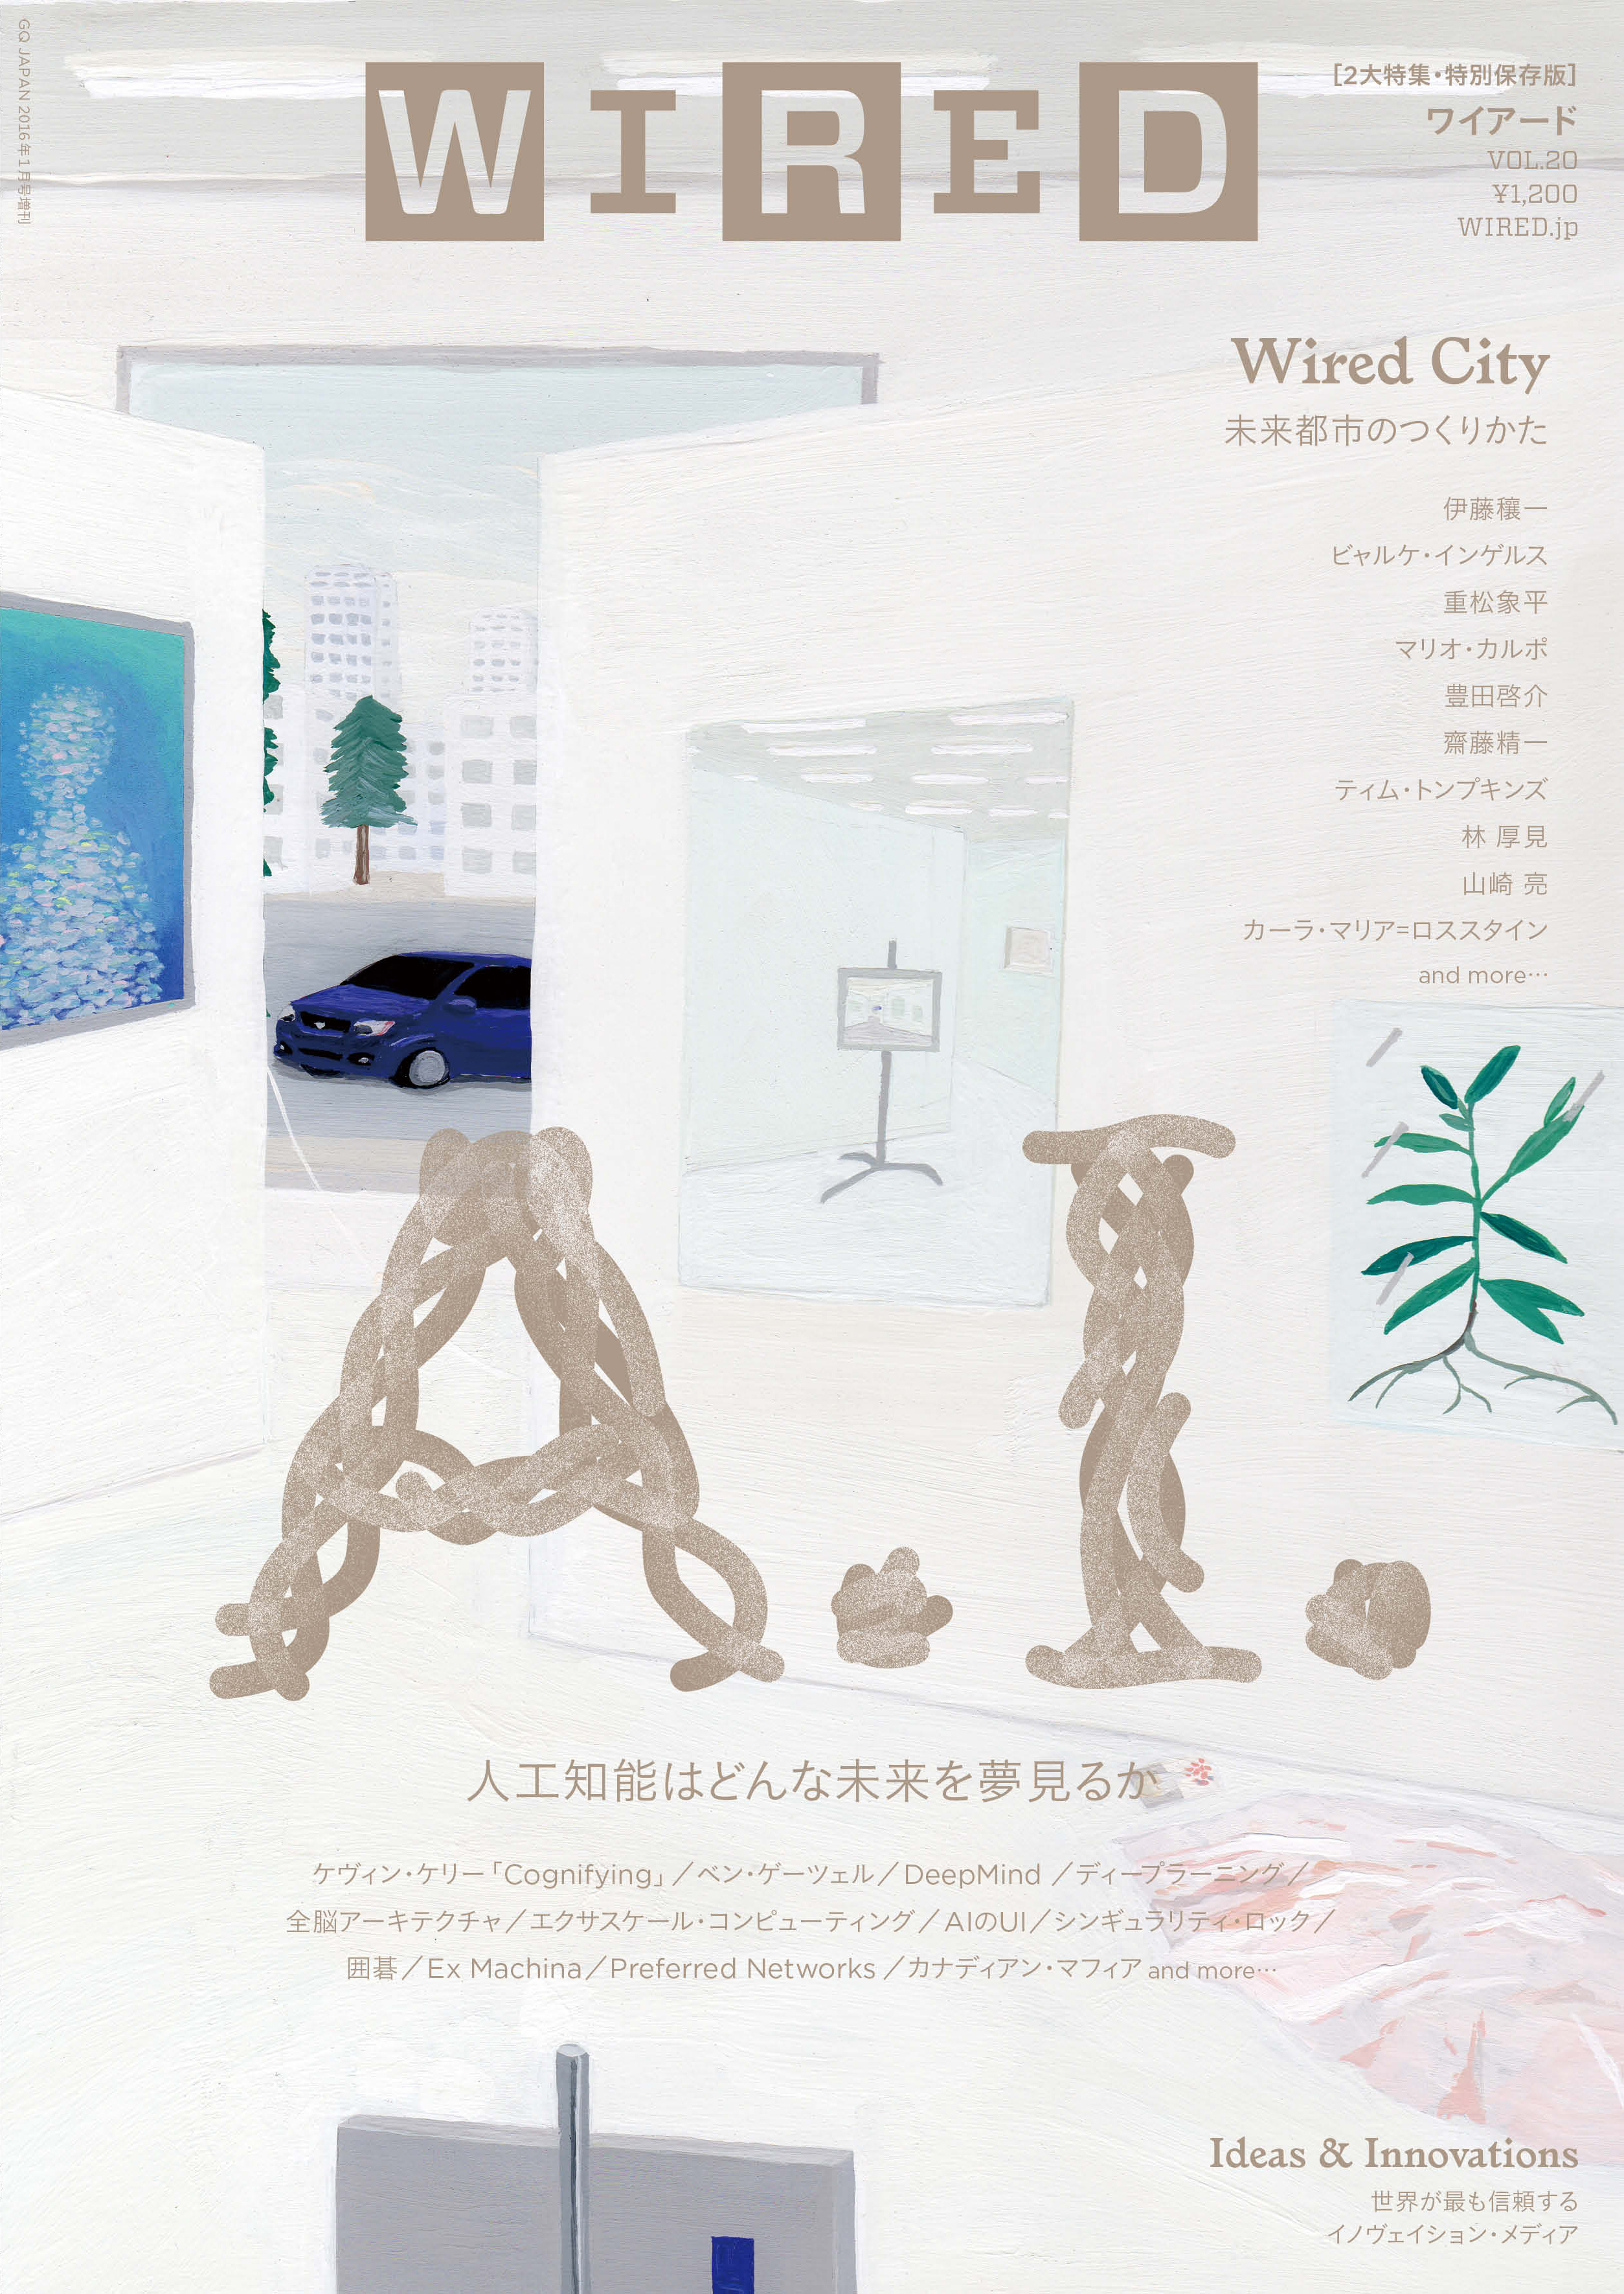 12 1発売 Wired Vol は 人工知能 と 都市 の2大特集 特別号保存版 コンデナスト ジャパンのプレスリリース